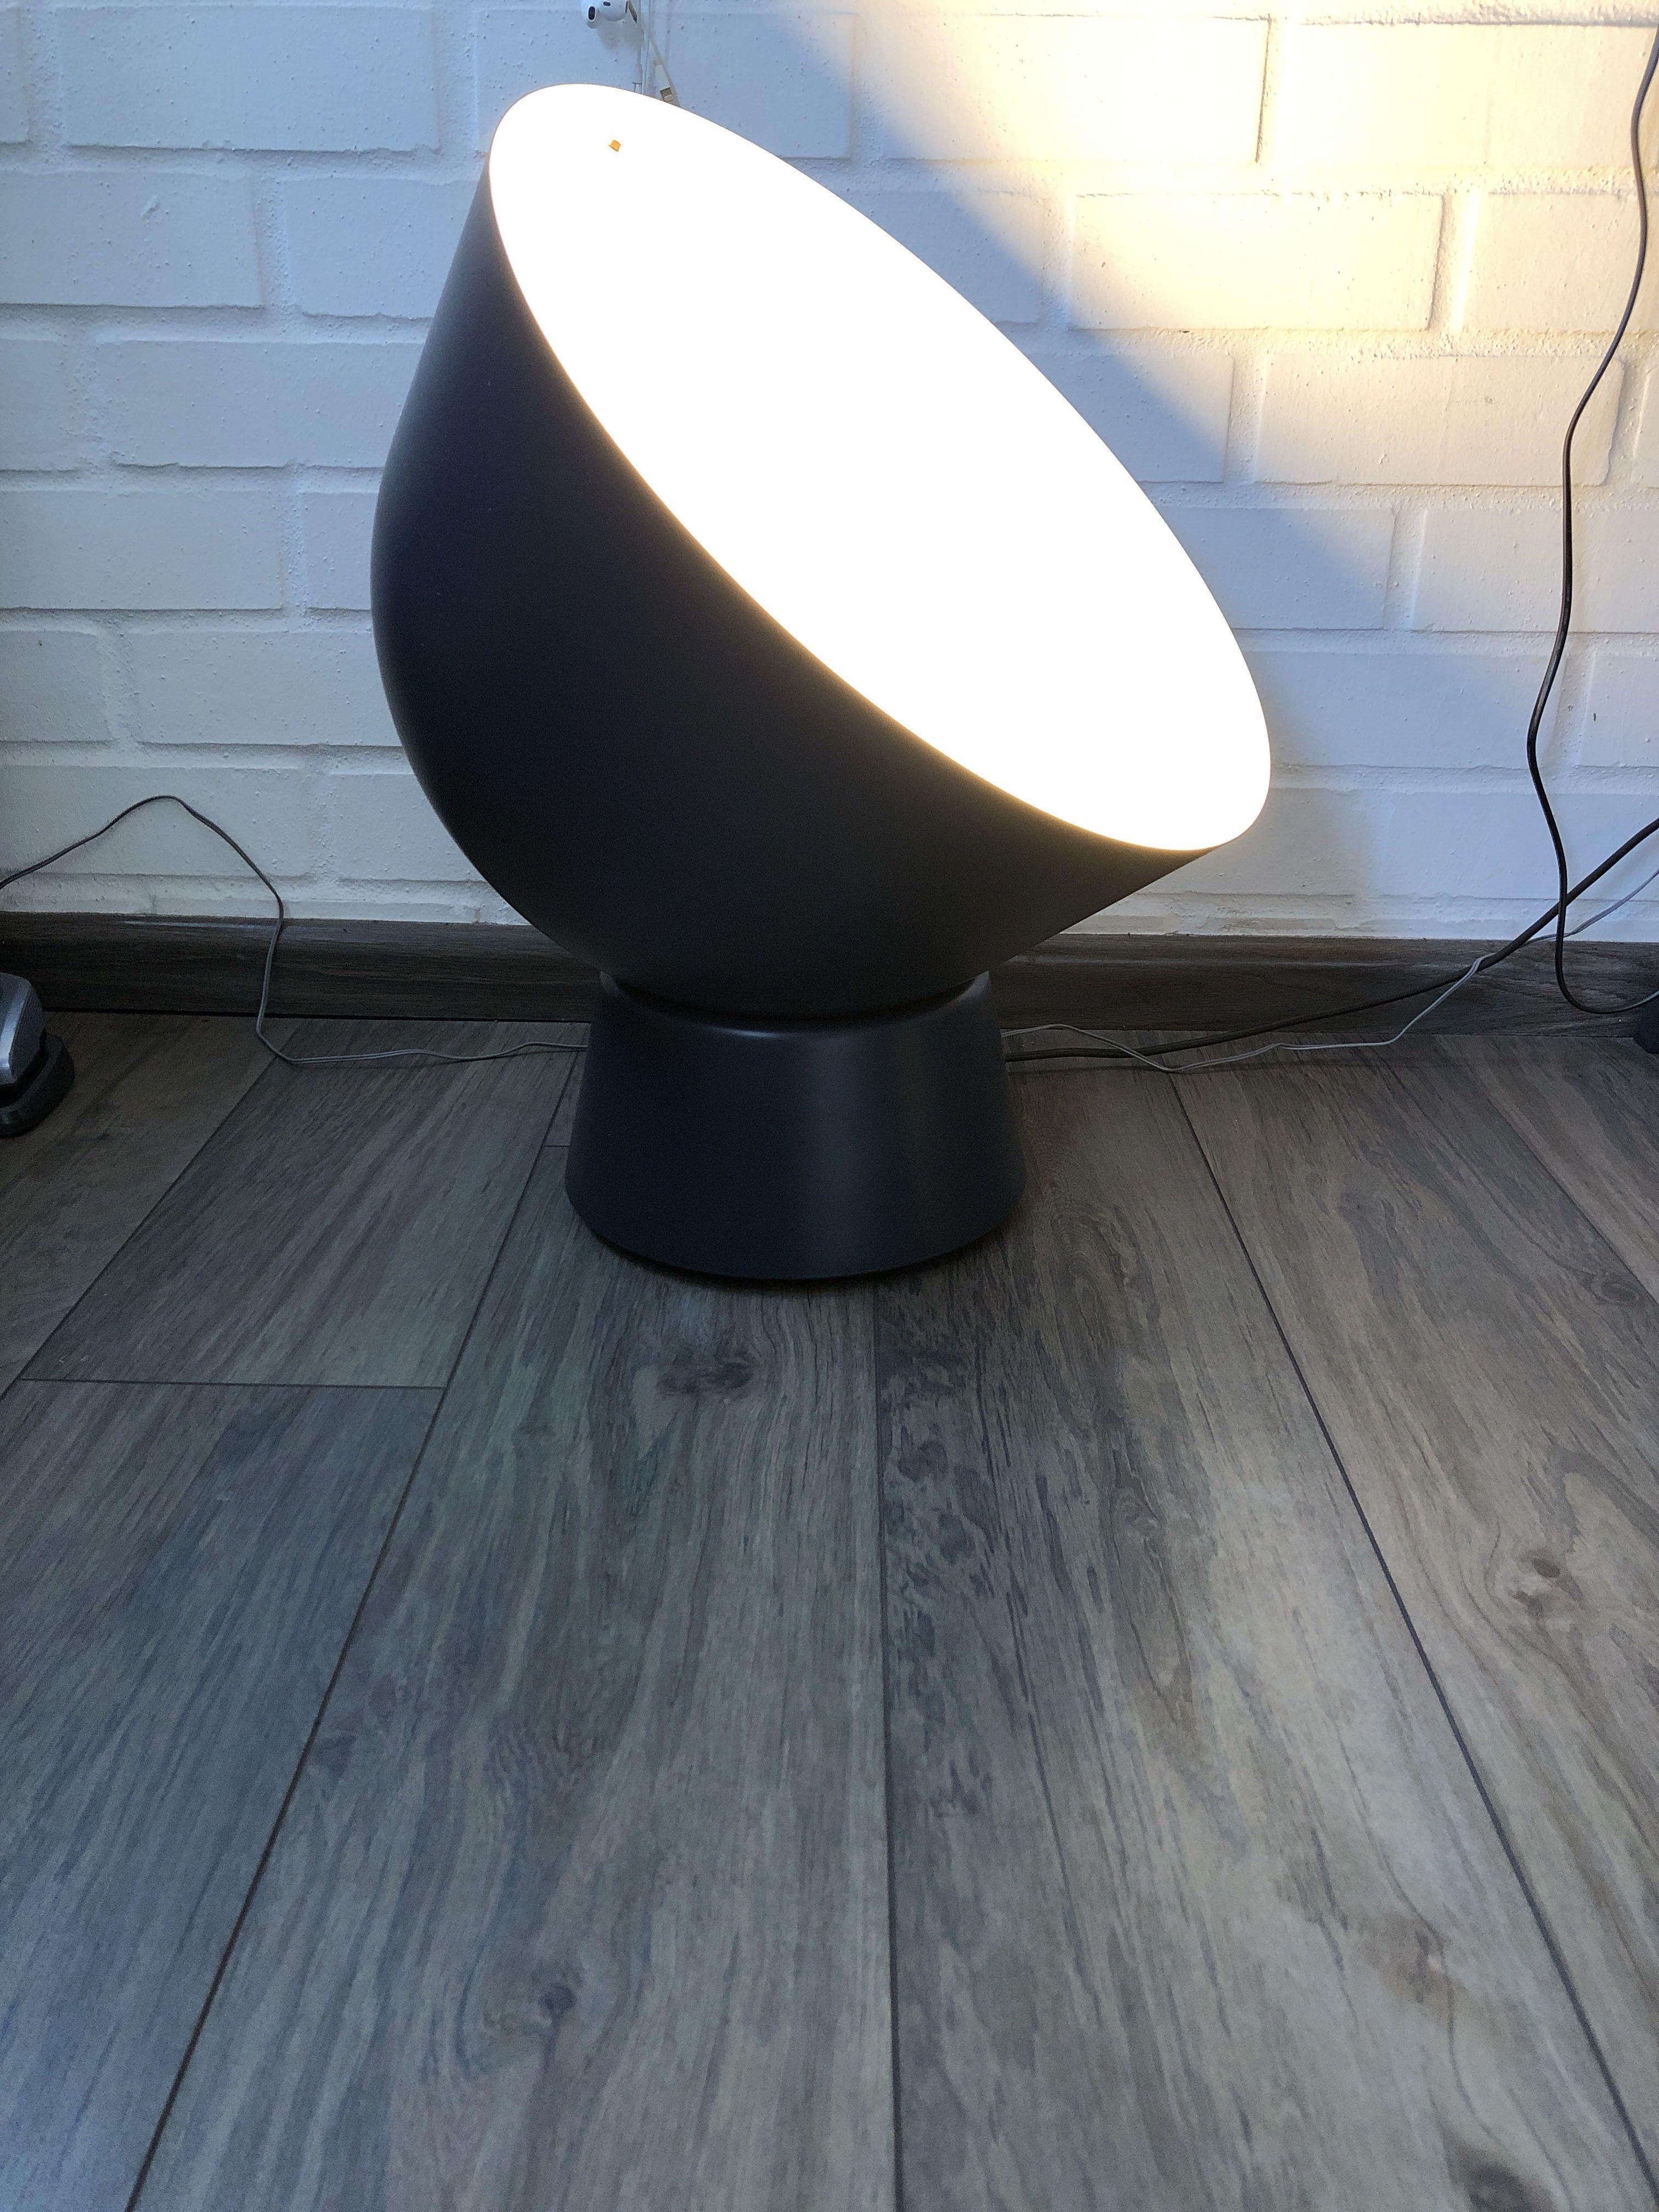 Ikea Ps 17 Floor Lamp Buy Now On Sale 55 Off Ionkiem Vn